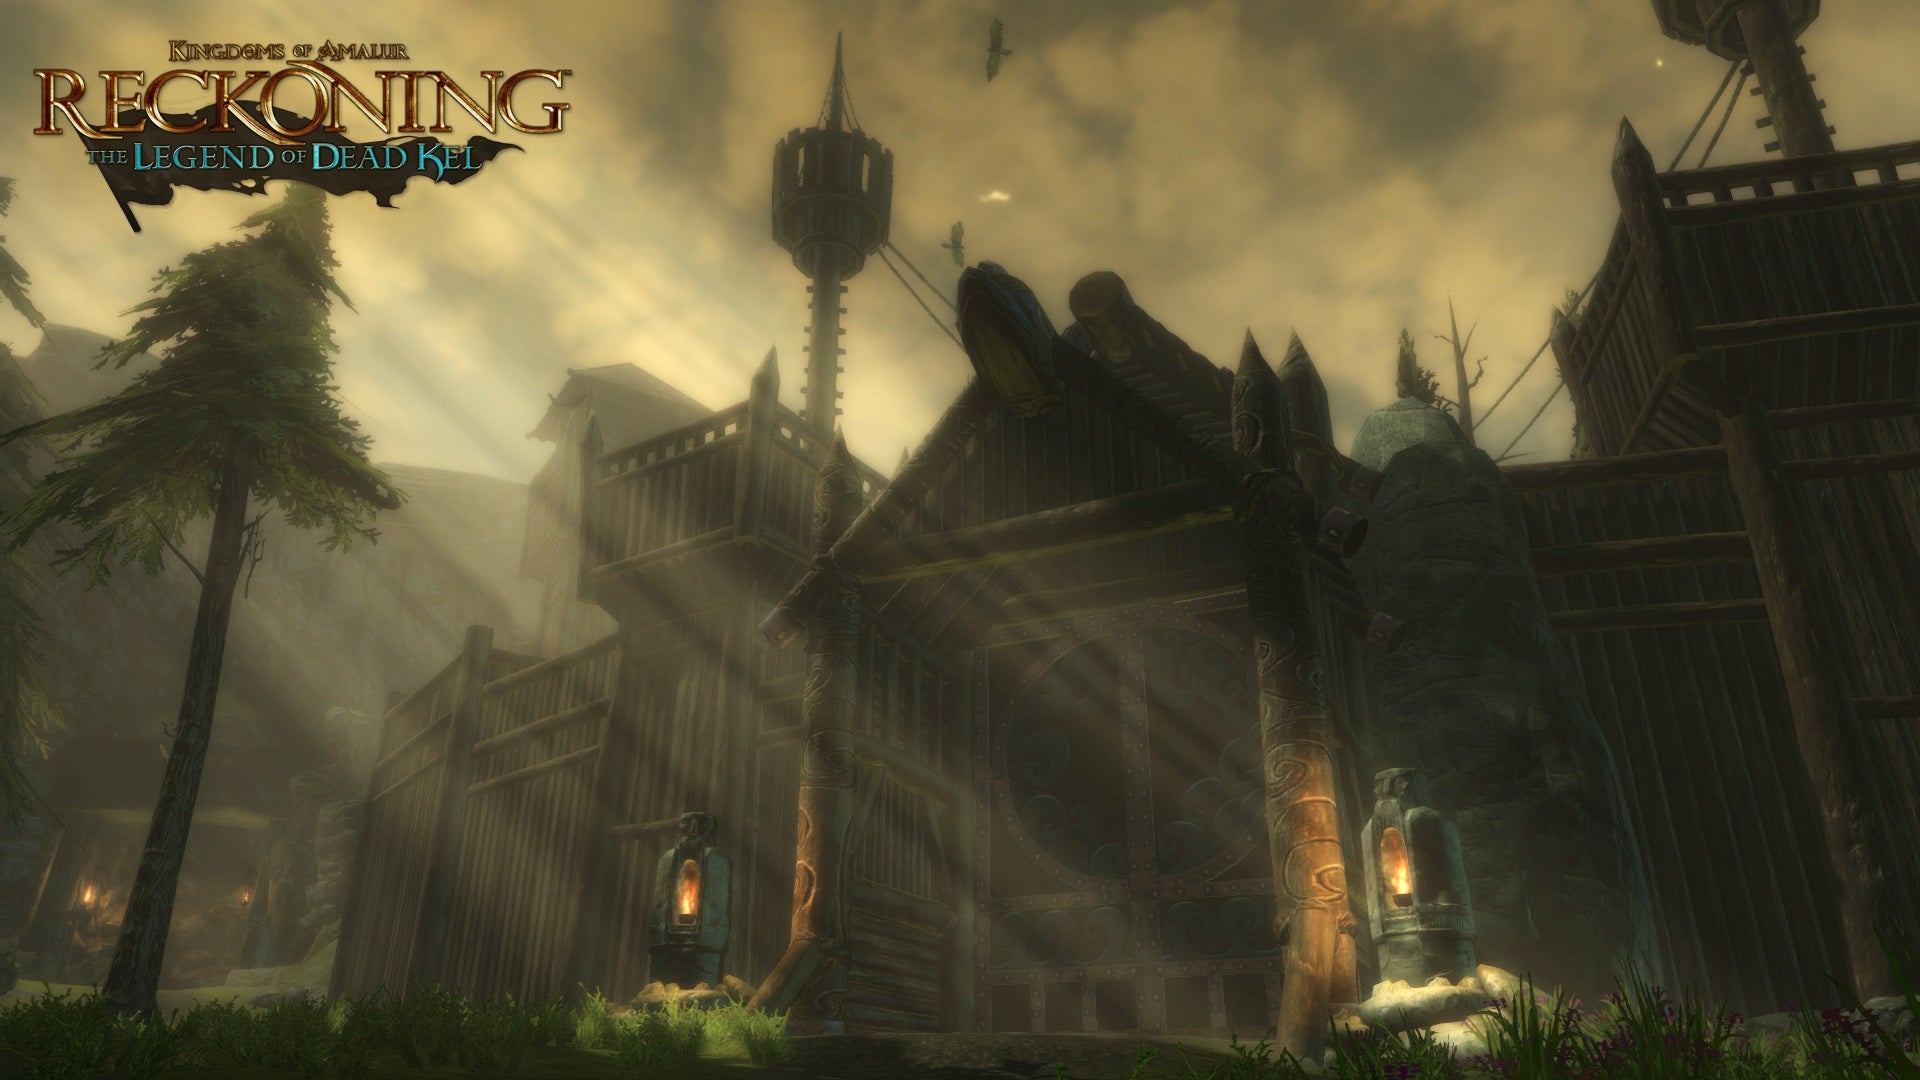 Kingdoms of Amalur: Reckoning - The Legend of Dead Kel DLC